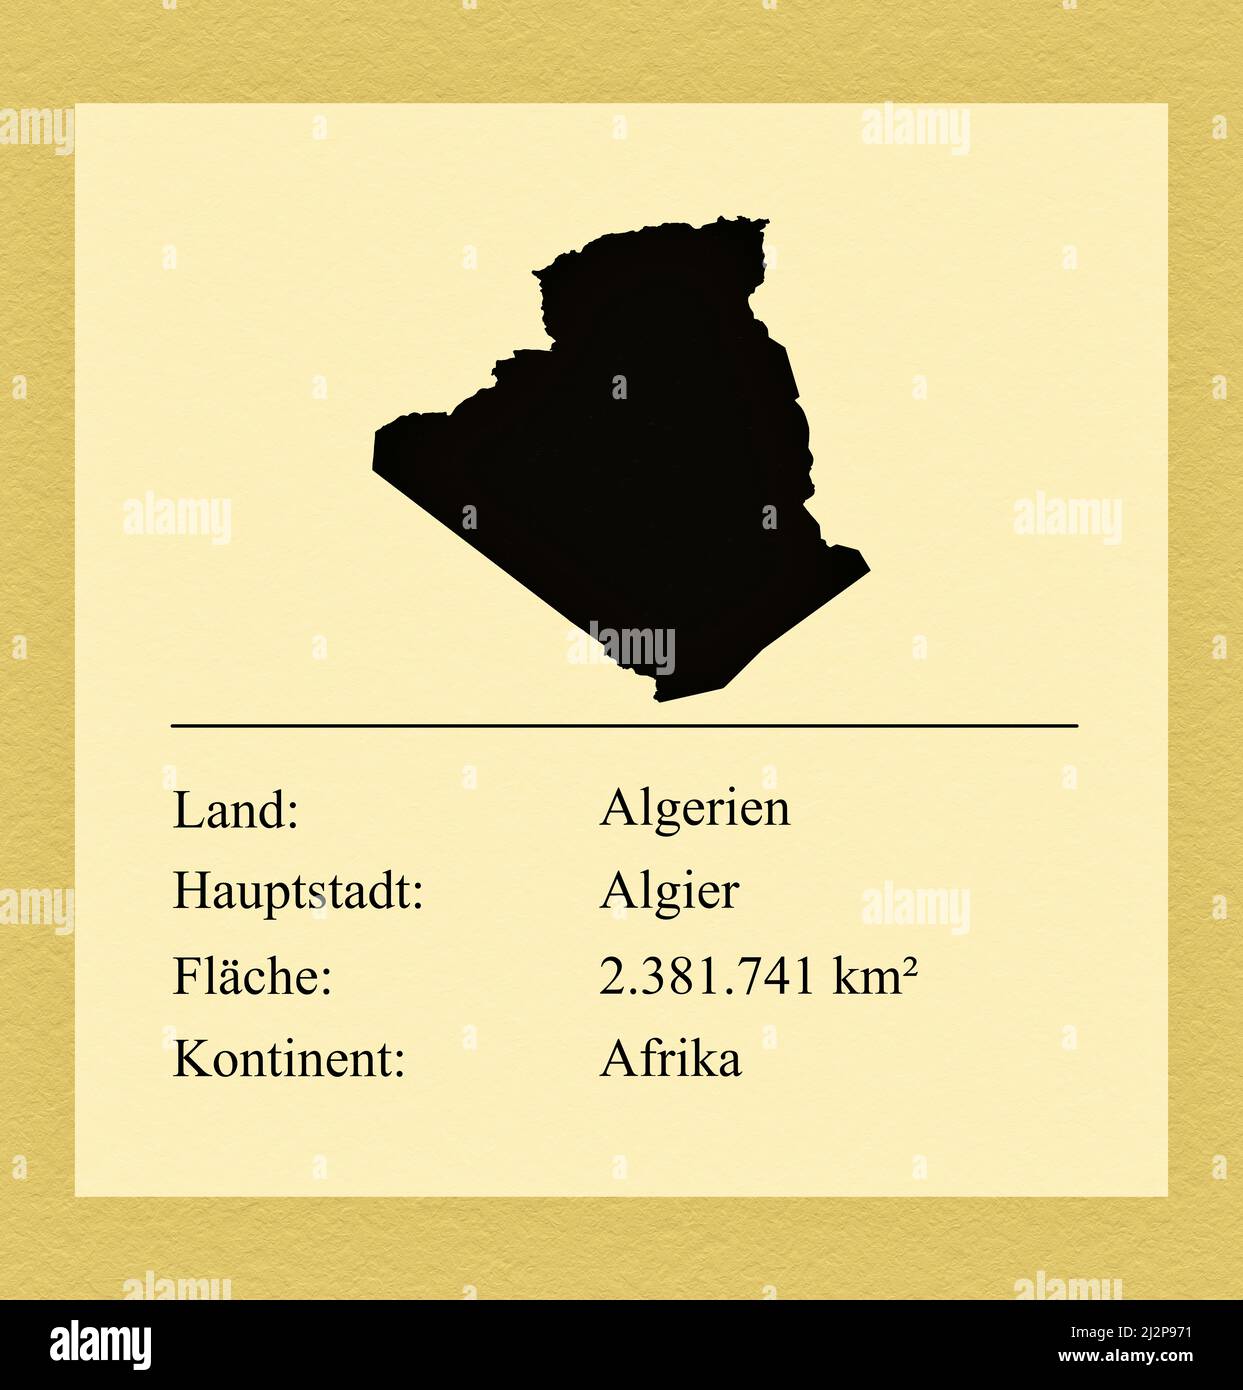 Umrisse des Landes Algerien, darunter ein kleiner Steckbrief mit Ländernamen, Hauptstadt, Fläche und Kontinent Stock Photo